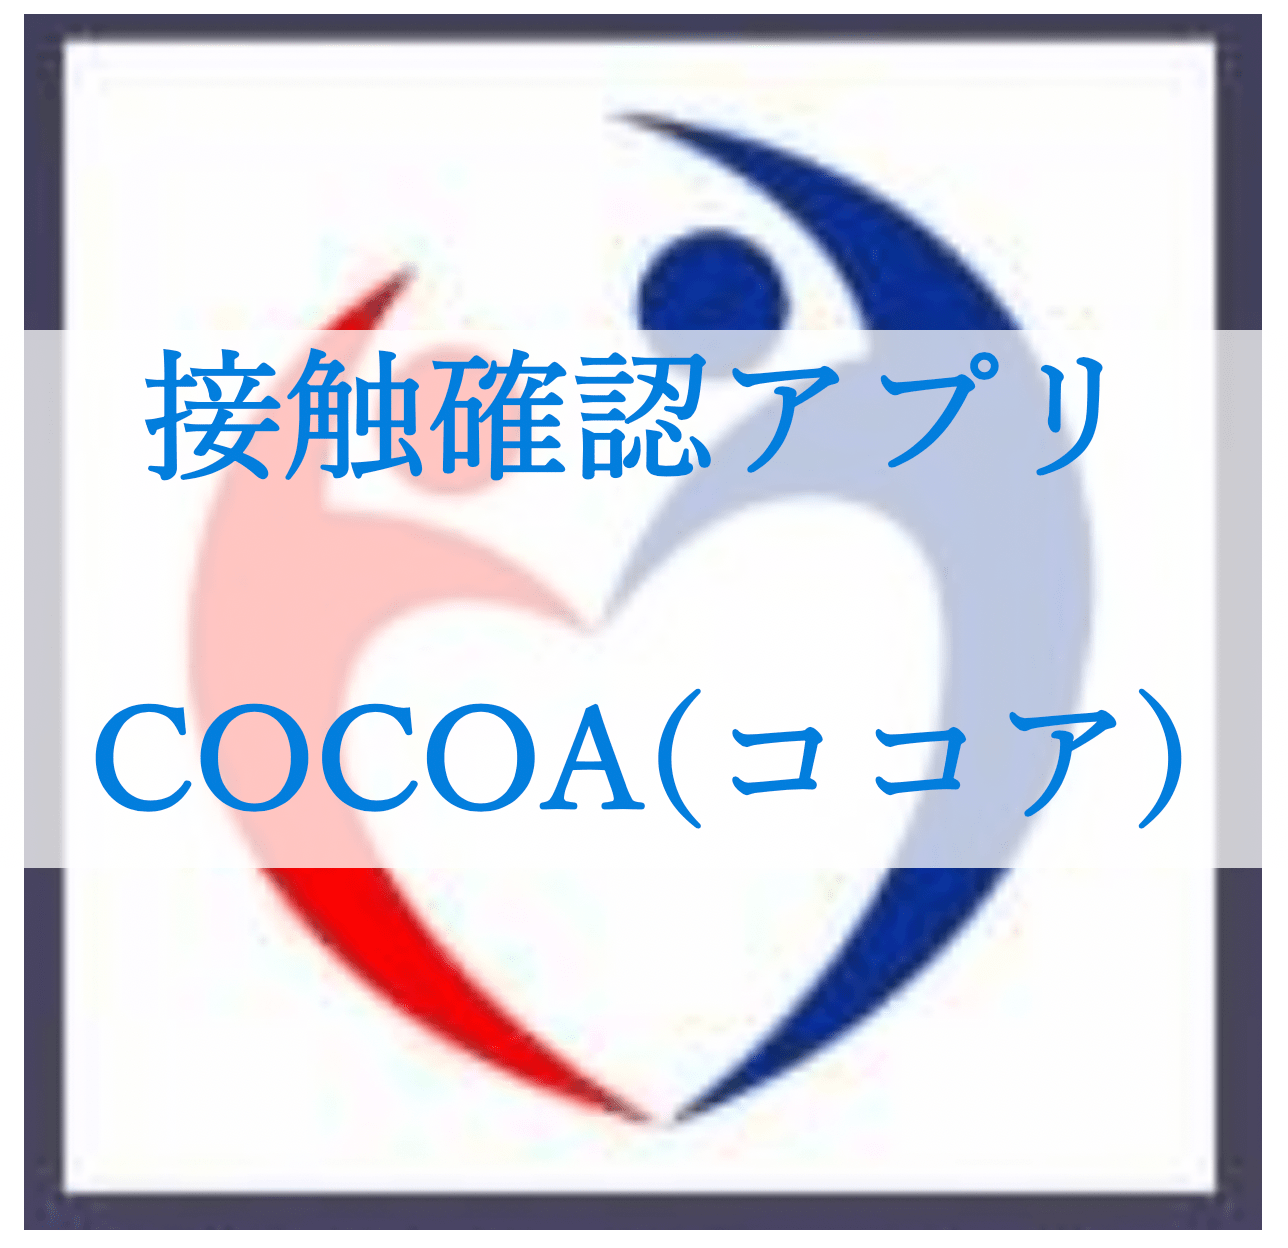 接触確認アプリ・COCOA(ココア)